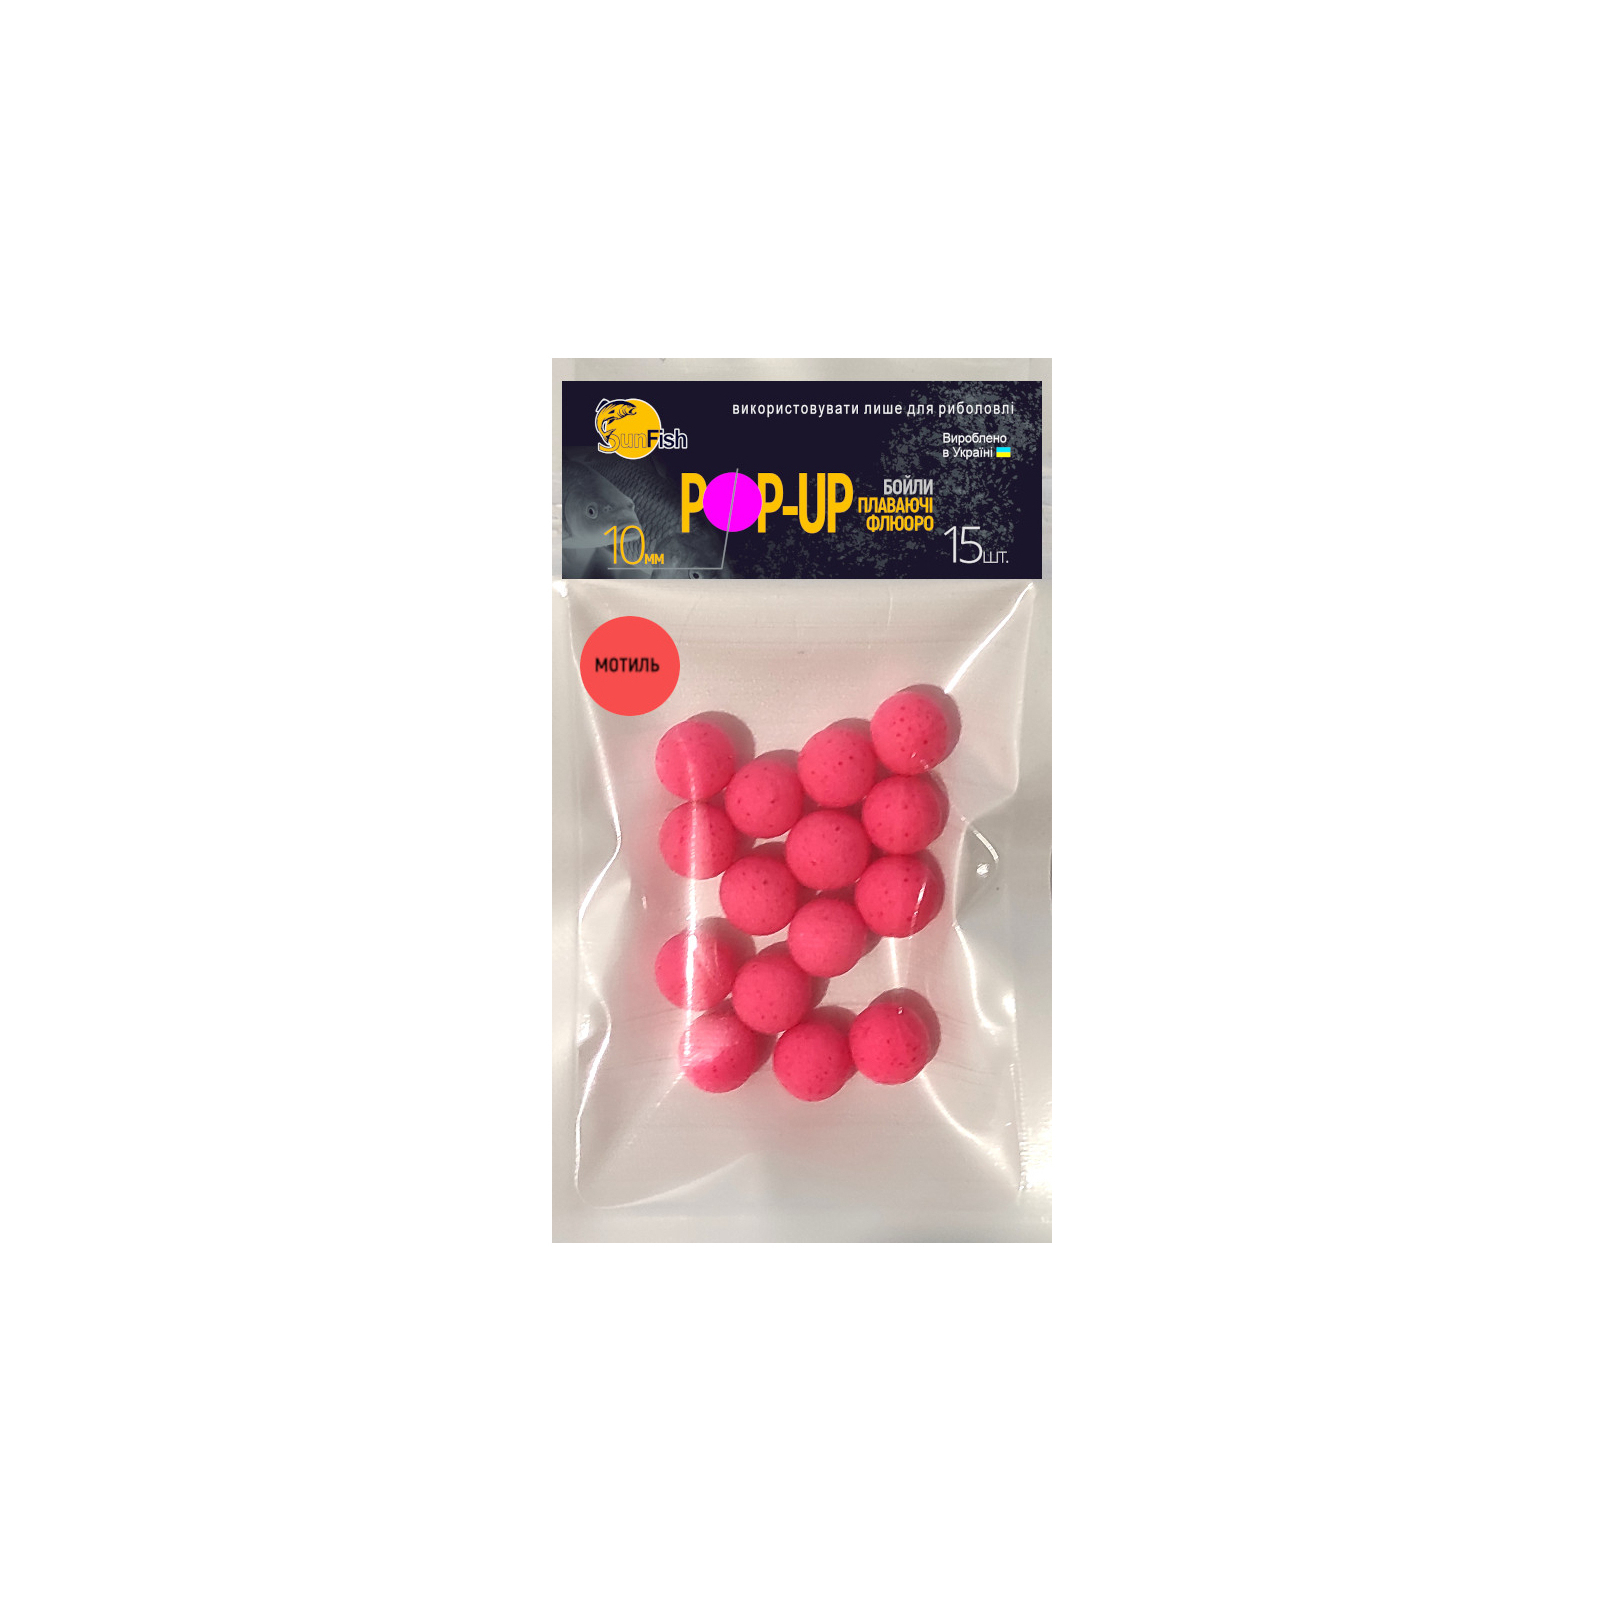 Бойл SunFish Pop-Up Мотиль 10 mm 15 шт (SF201694)